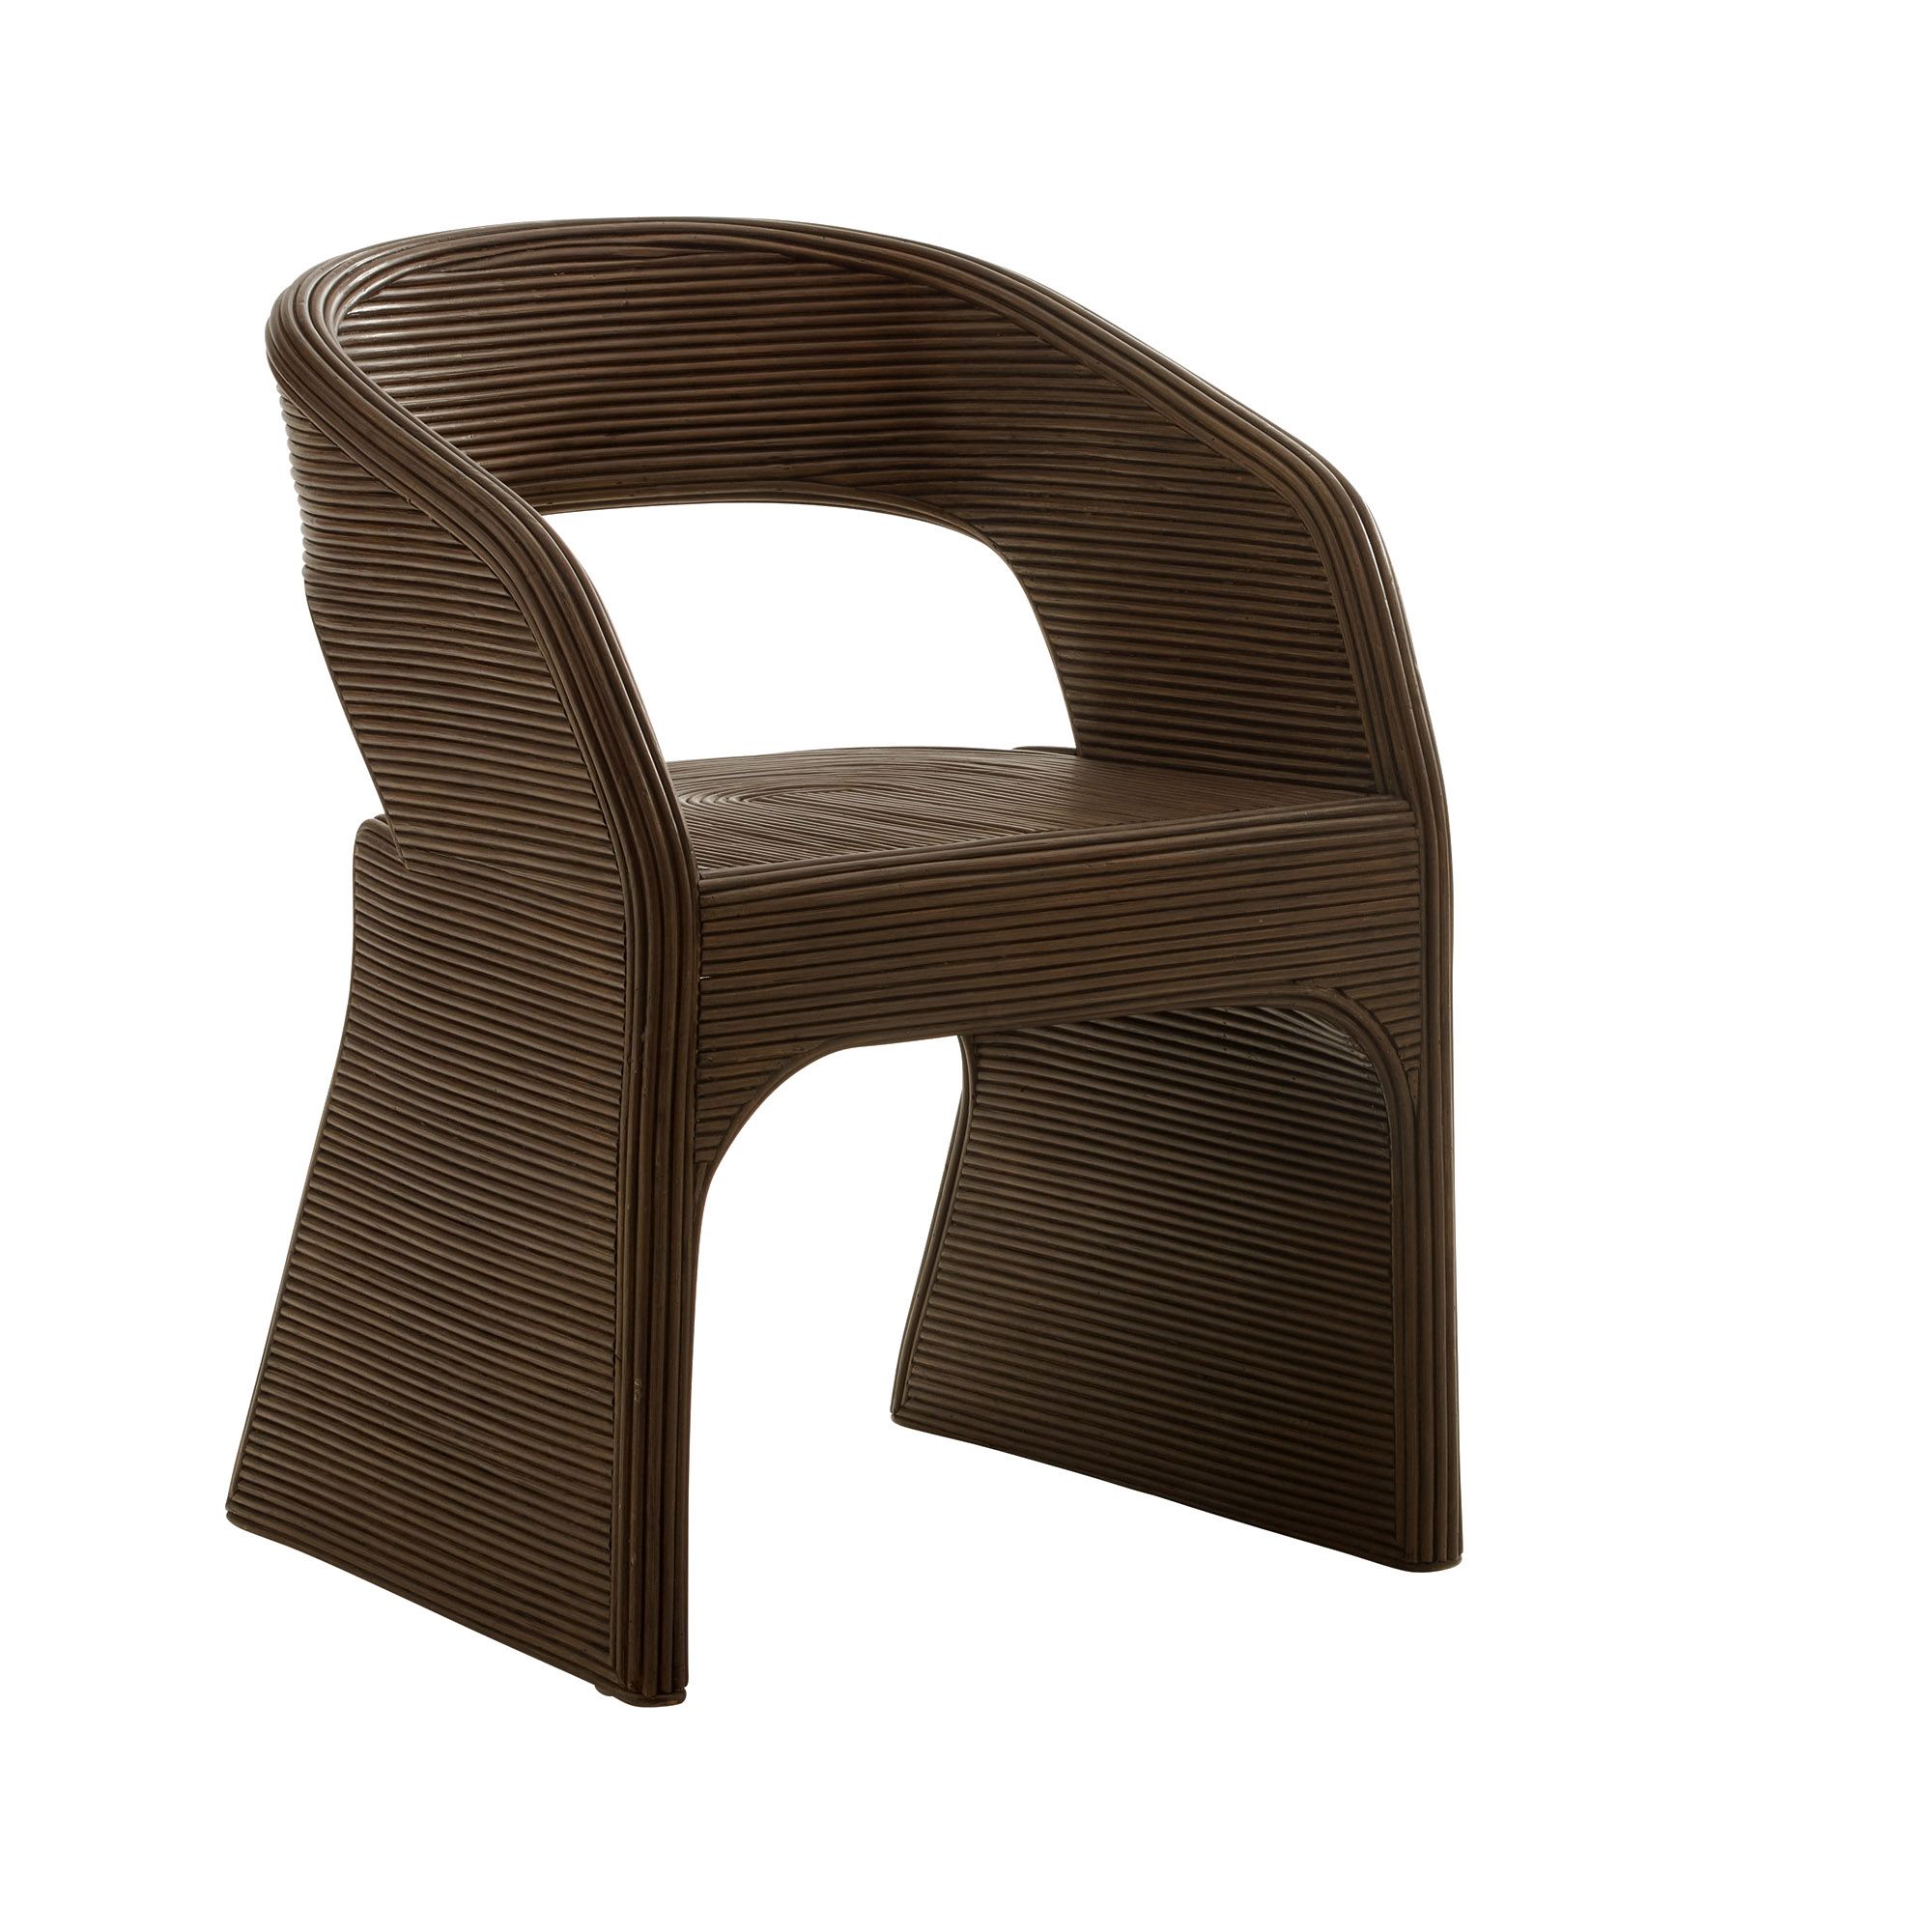 Купить Кресло Itiga Dining Chair в интернет-магазине roooms.ru